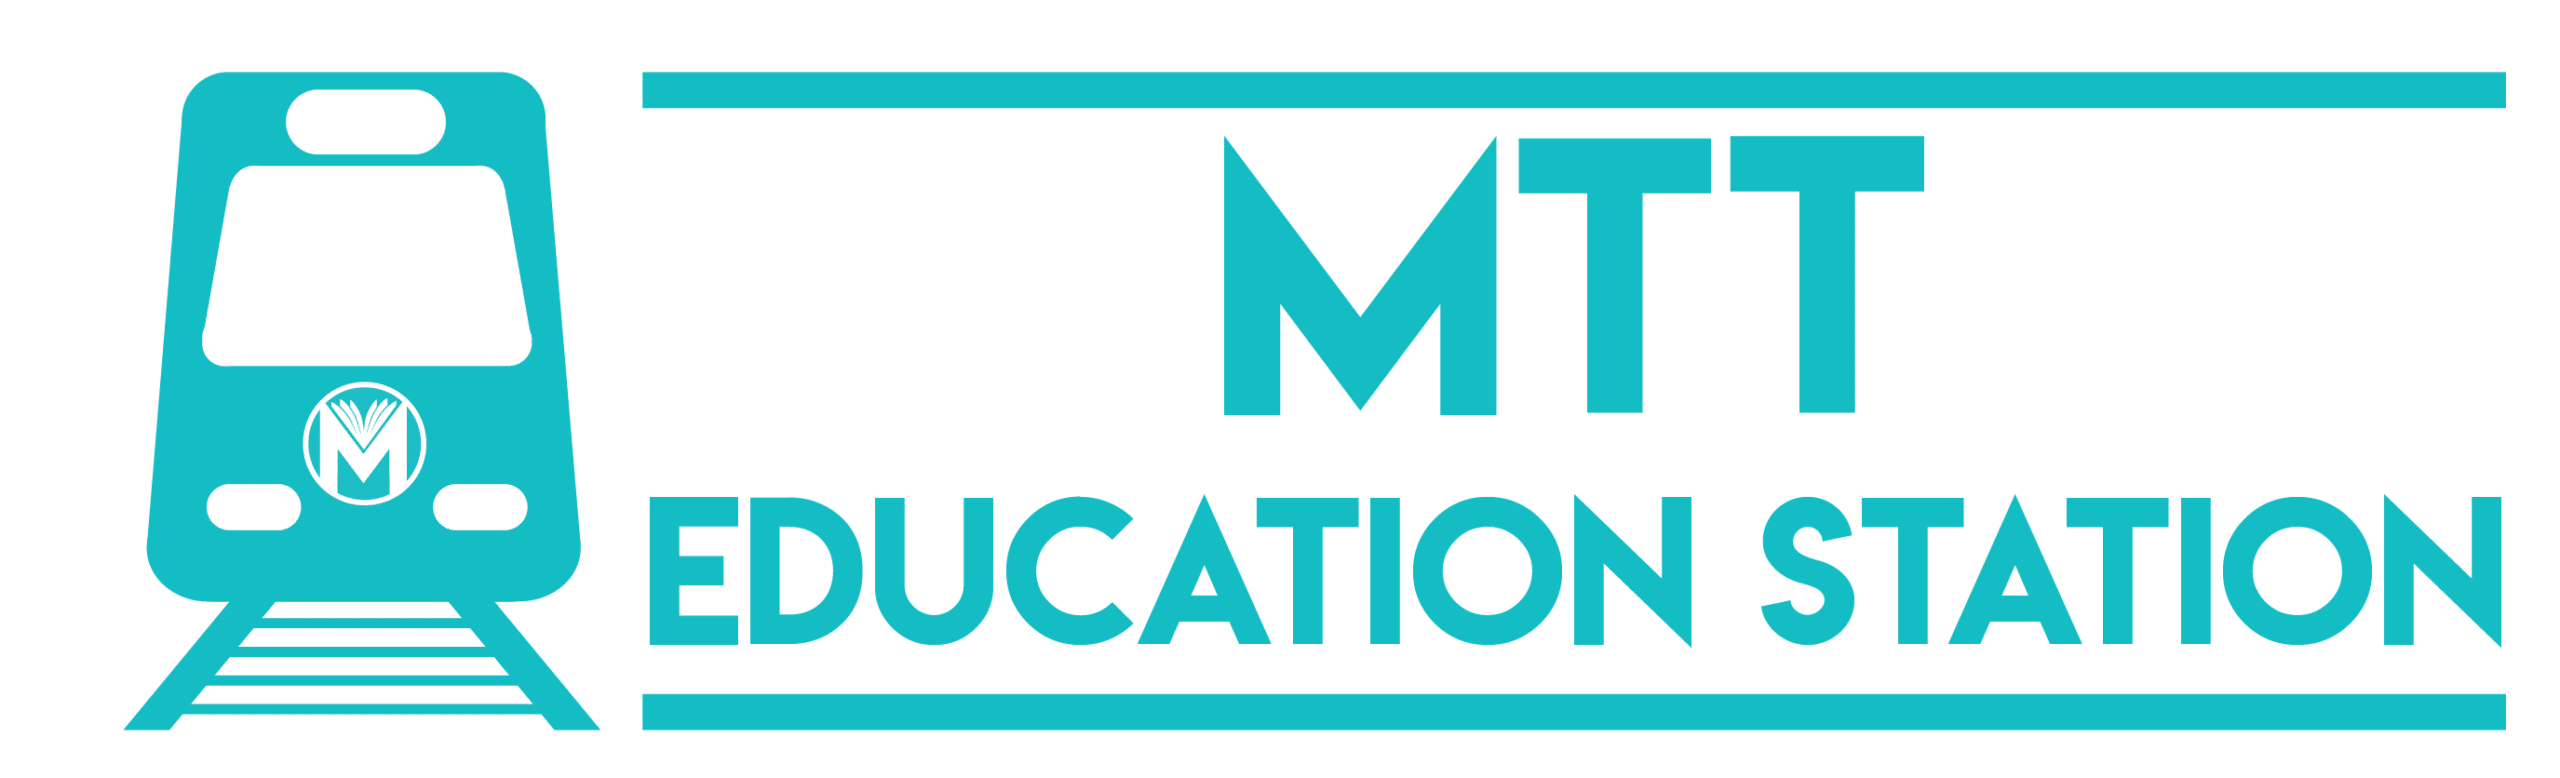 MTT Education Station